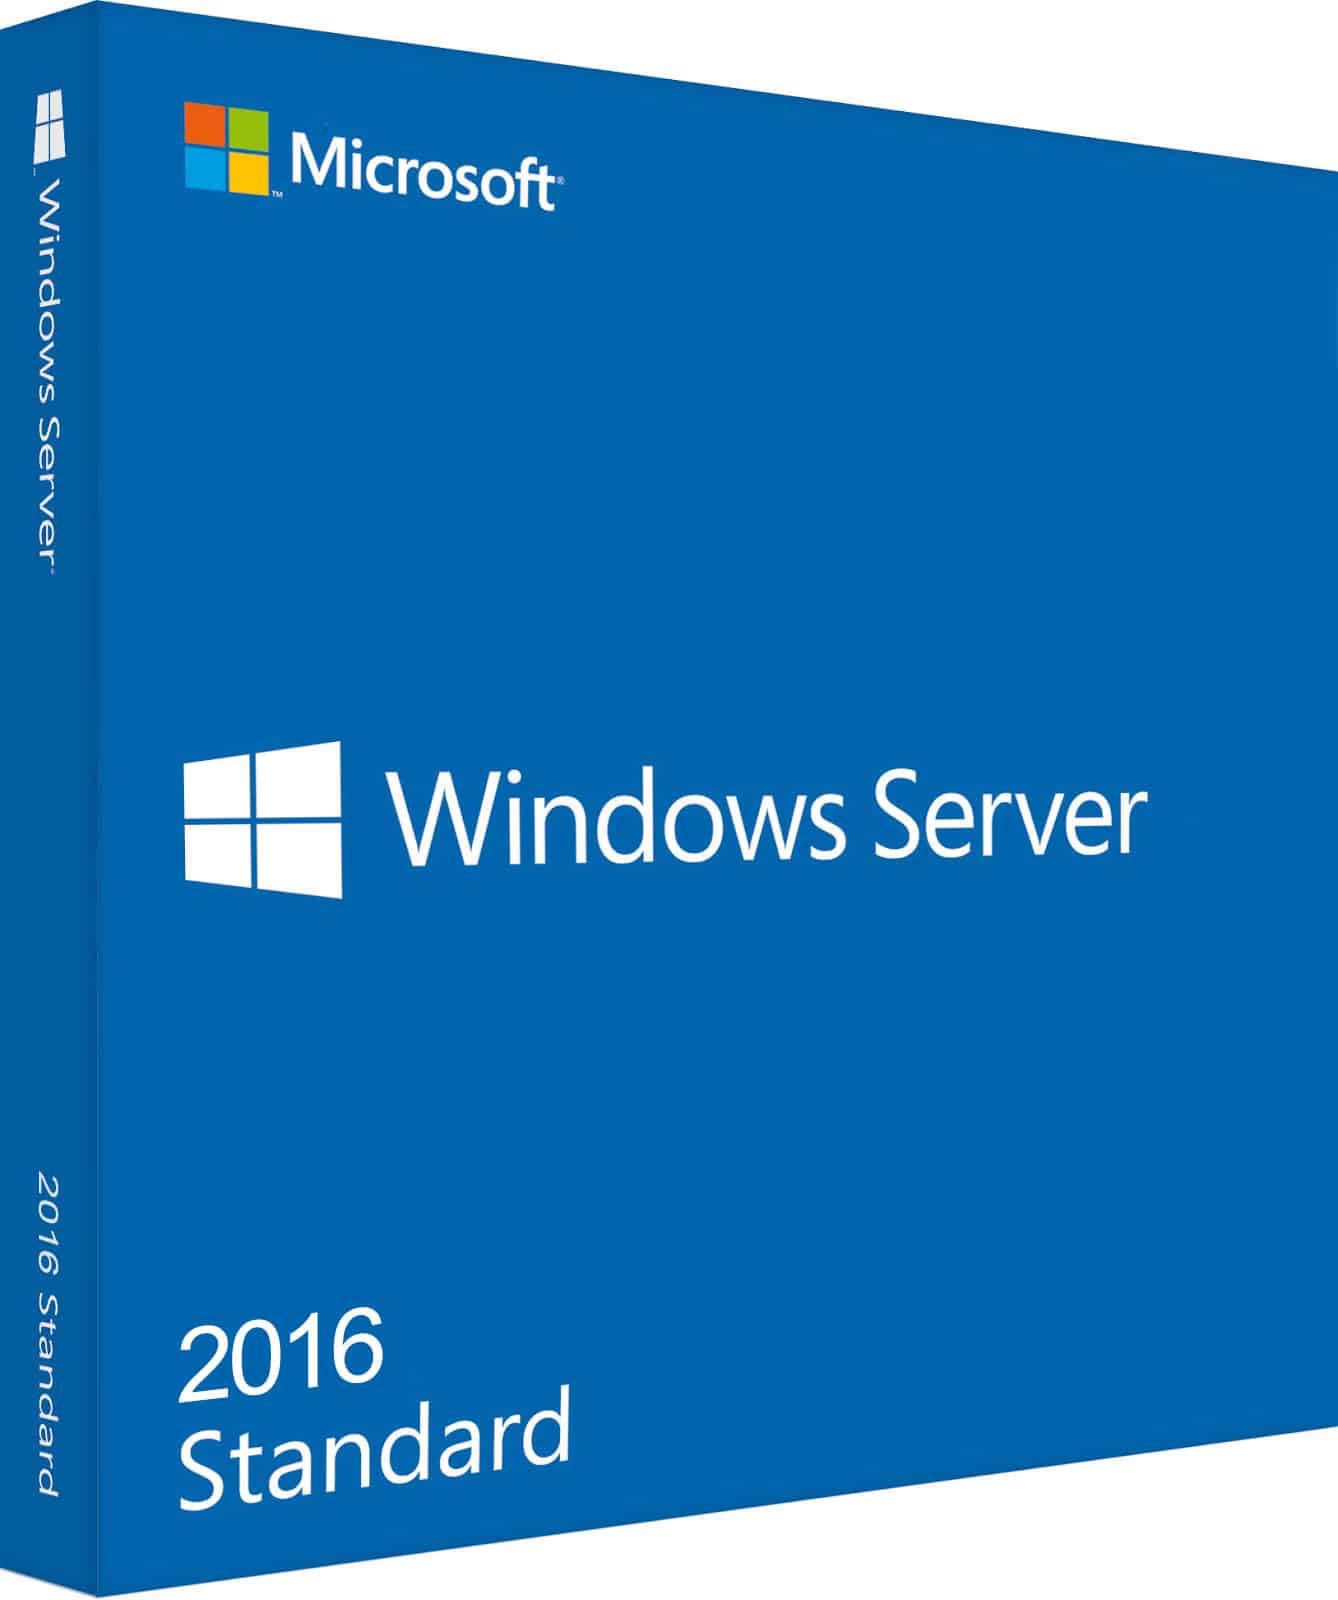 windows server 20161BORBoE7Lhud1